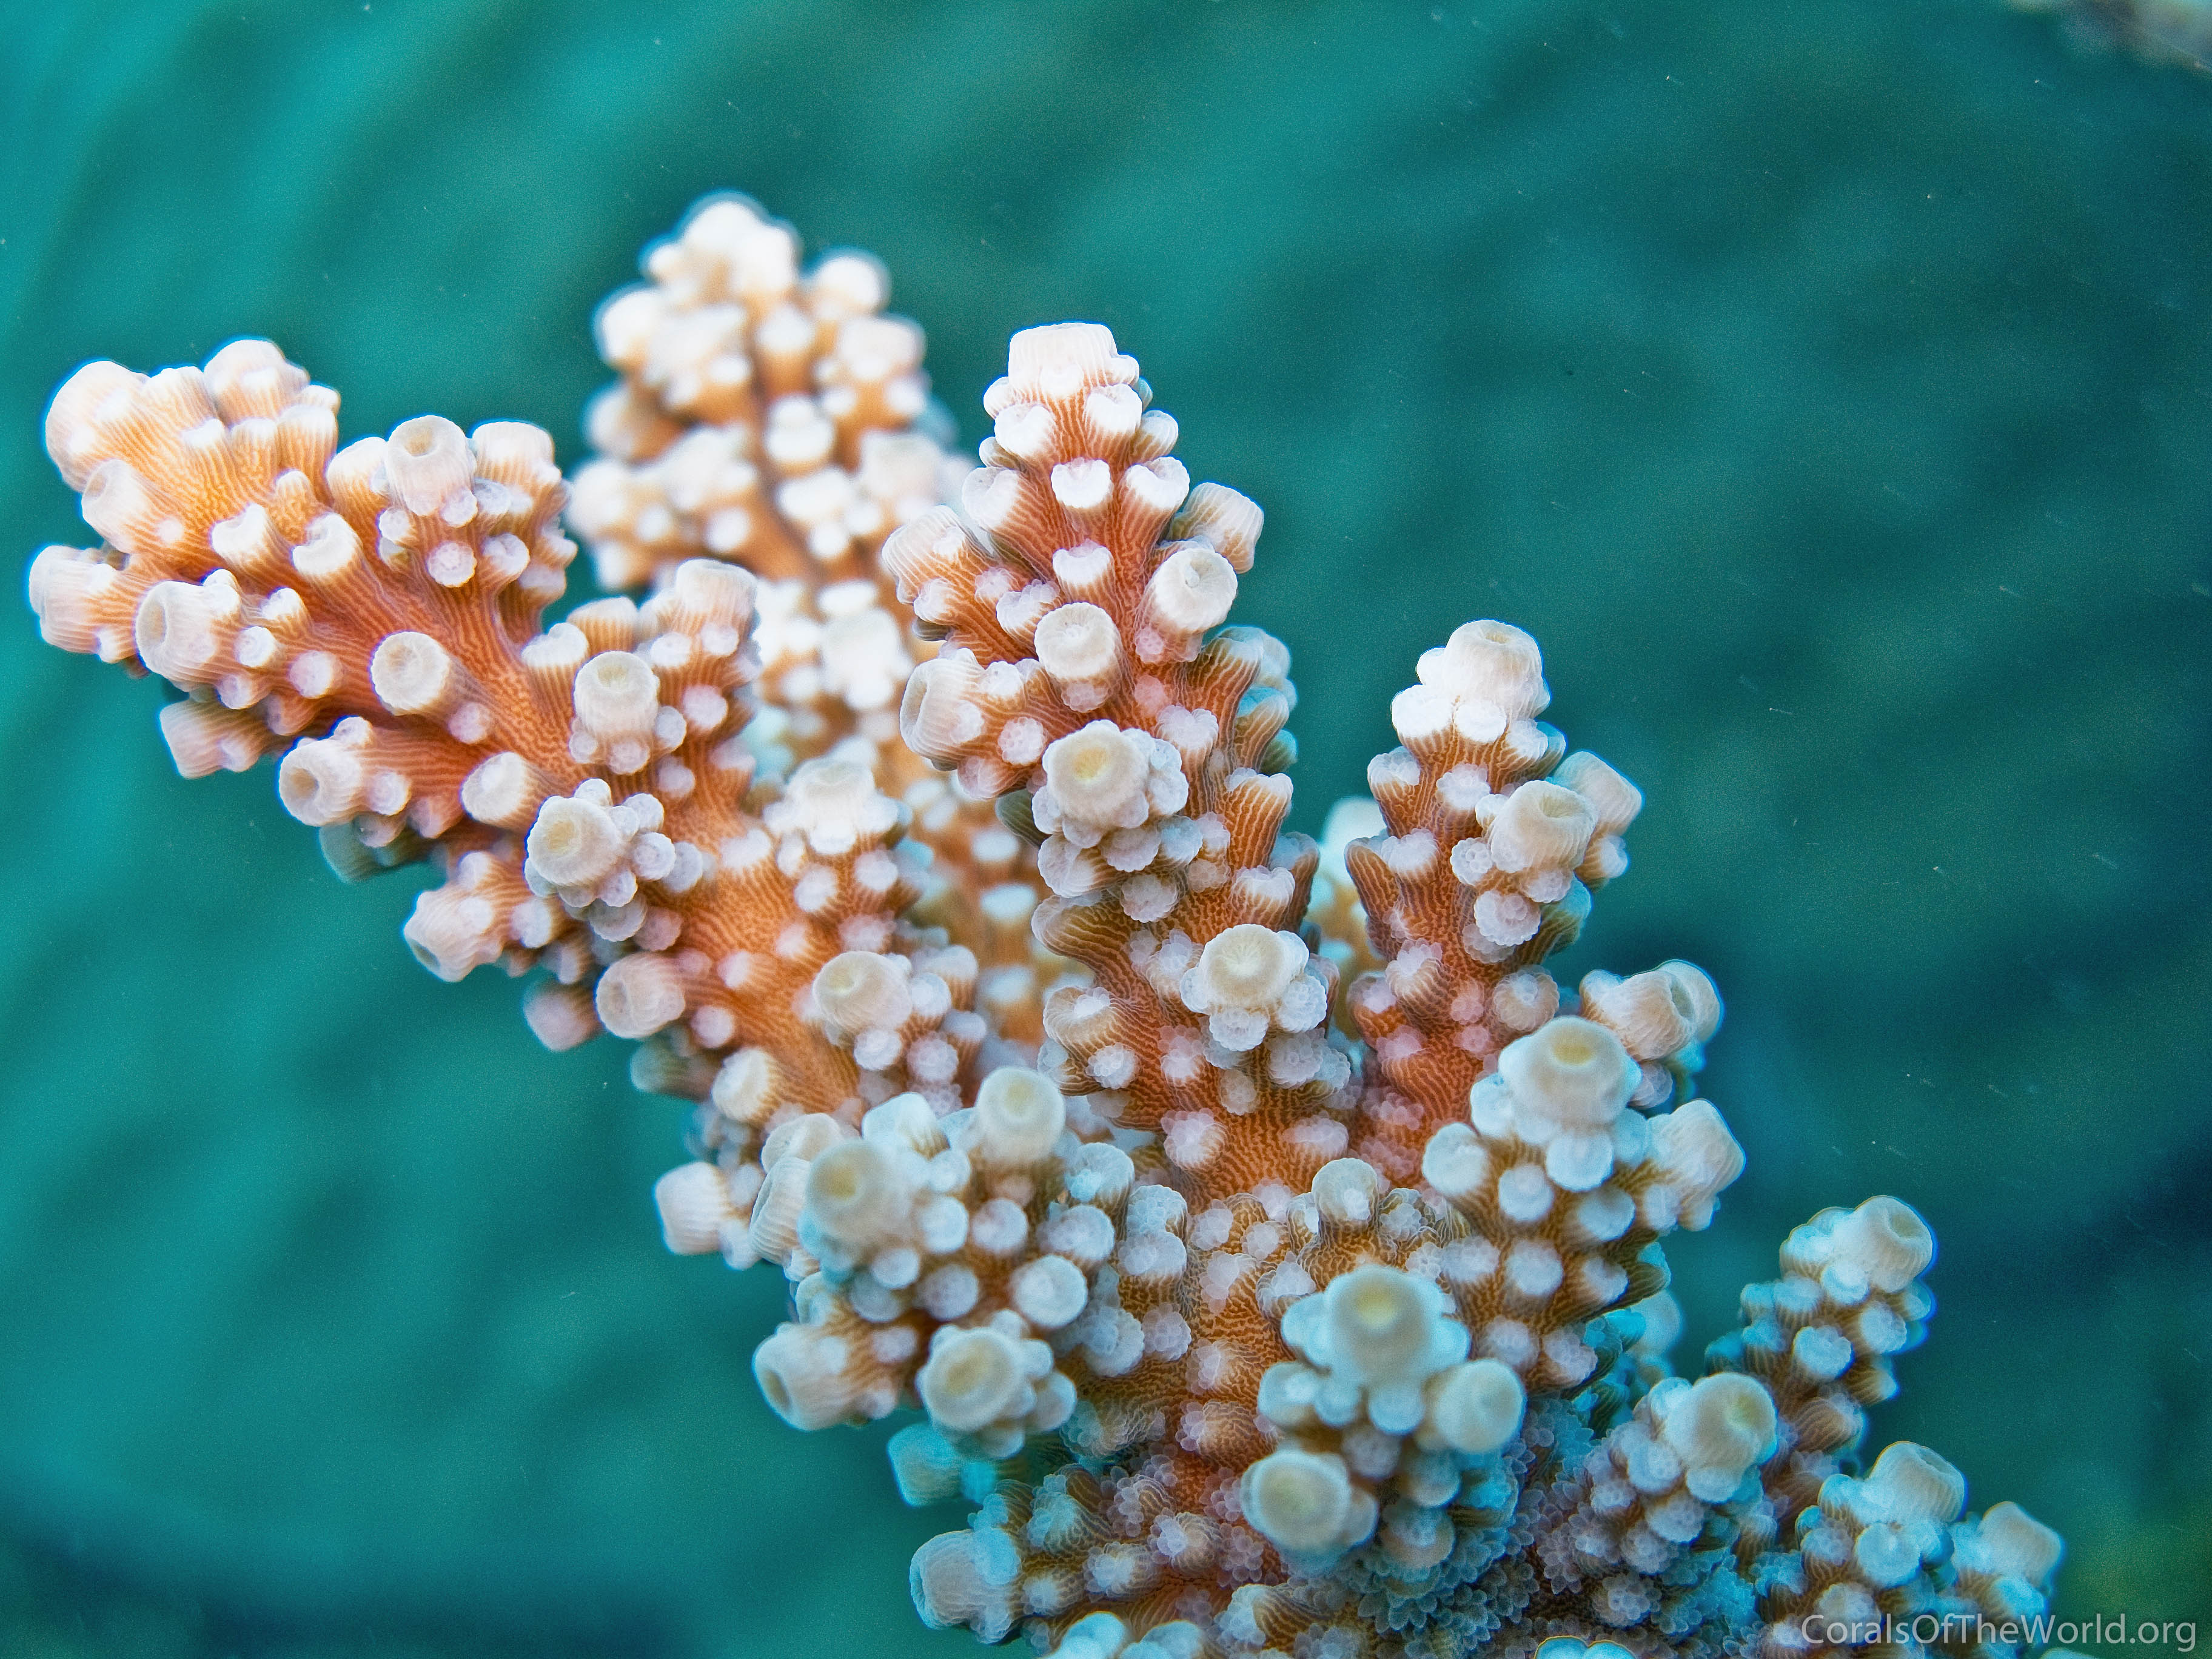 Acropora Florida Coral Branch: An Oceanic Masterpiece.